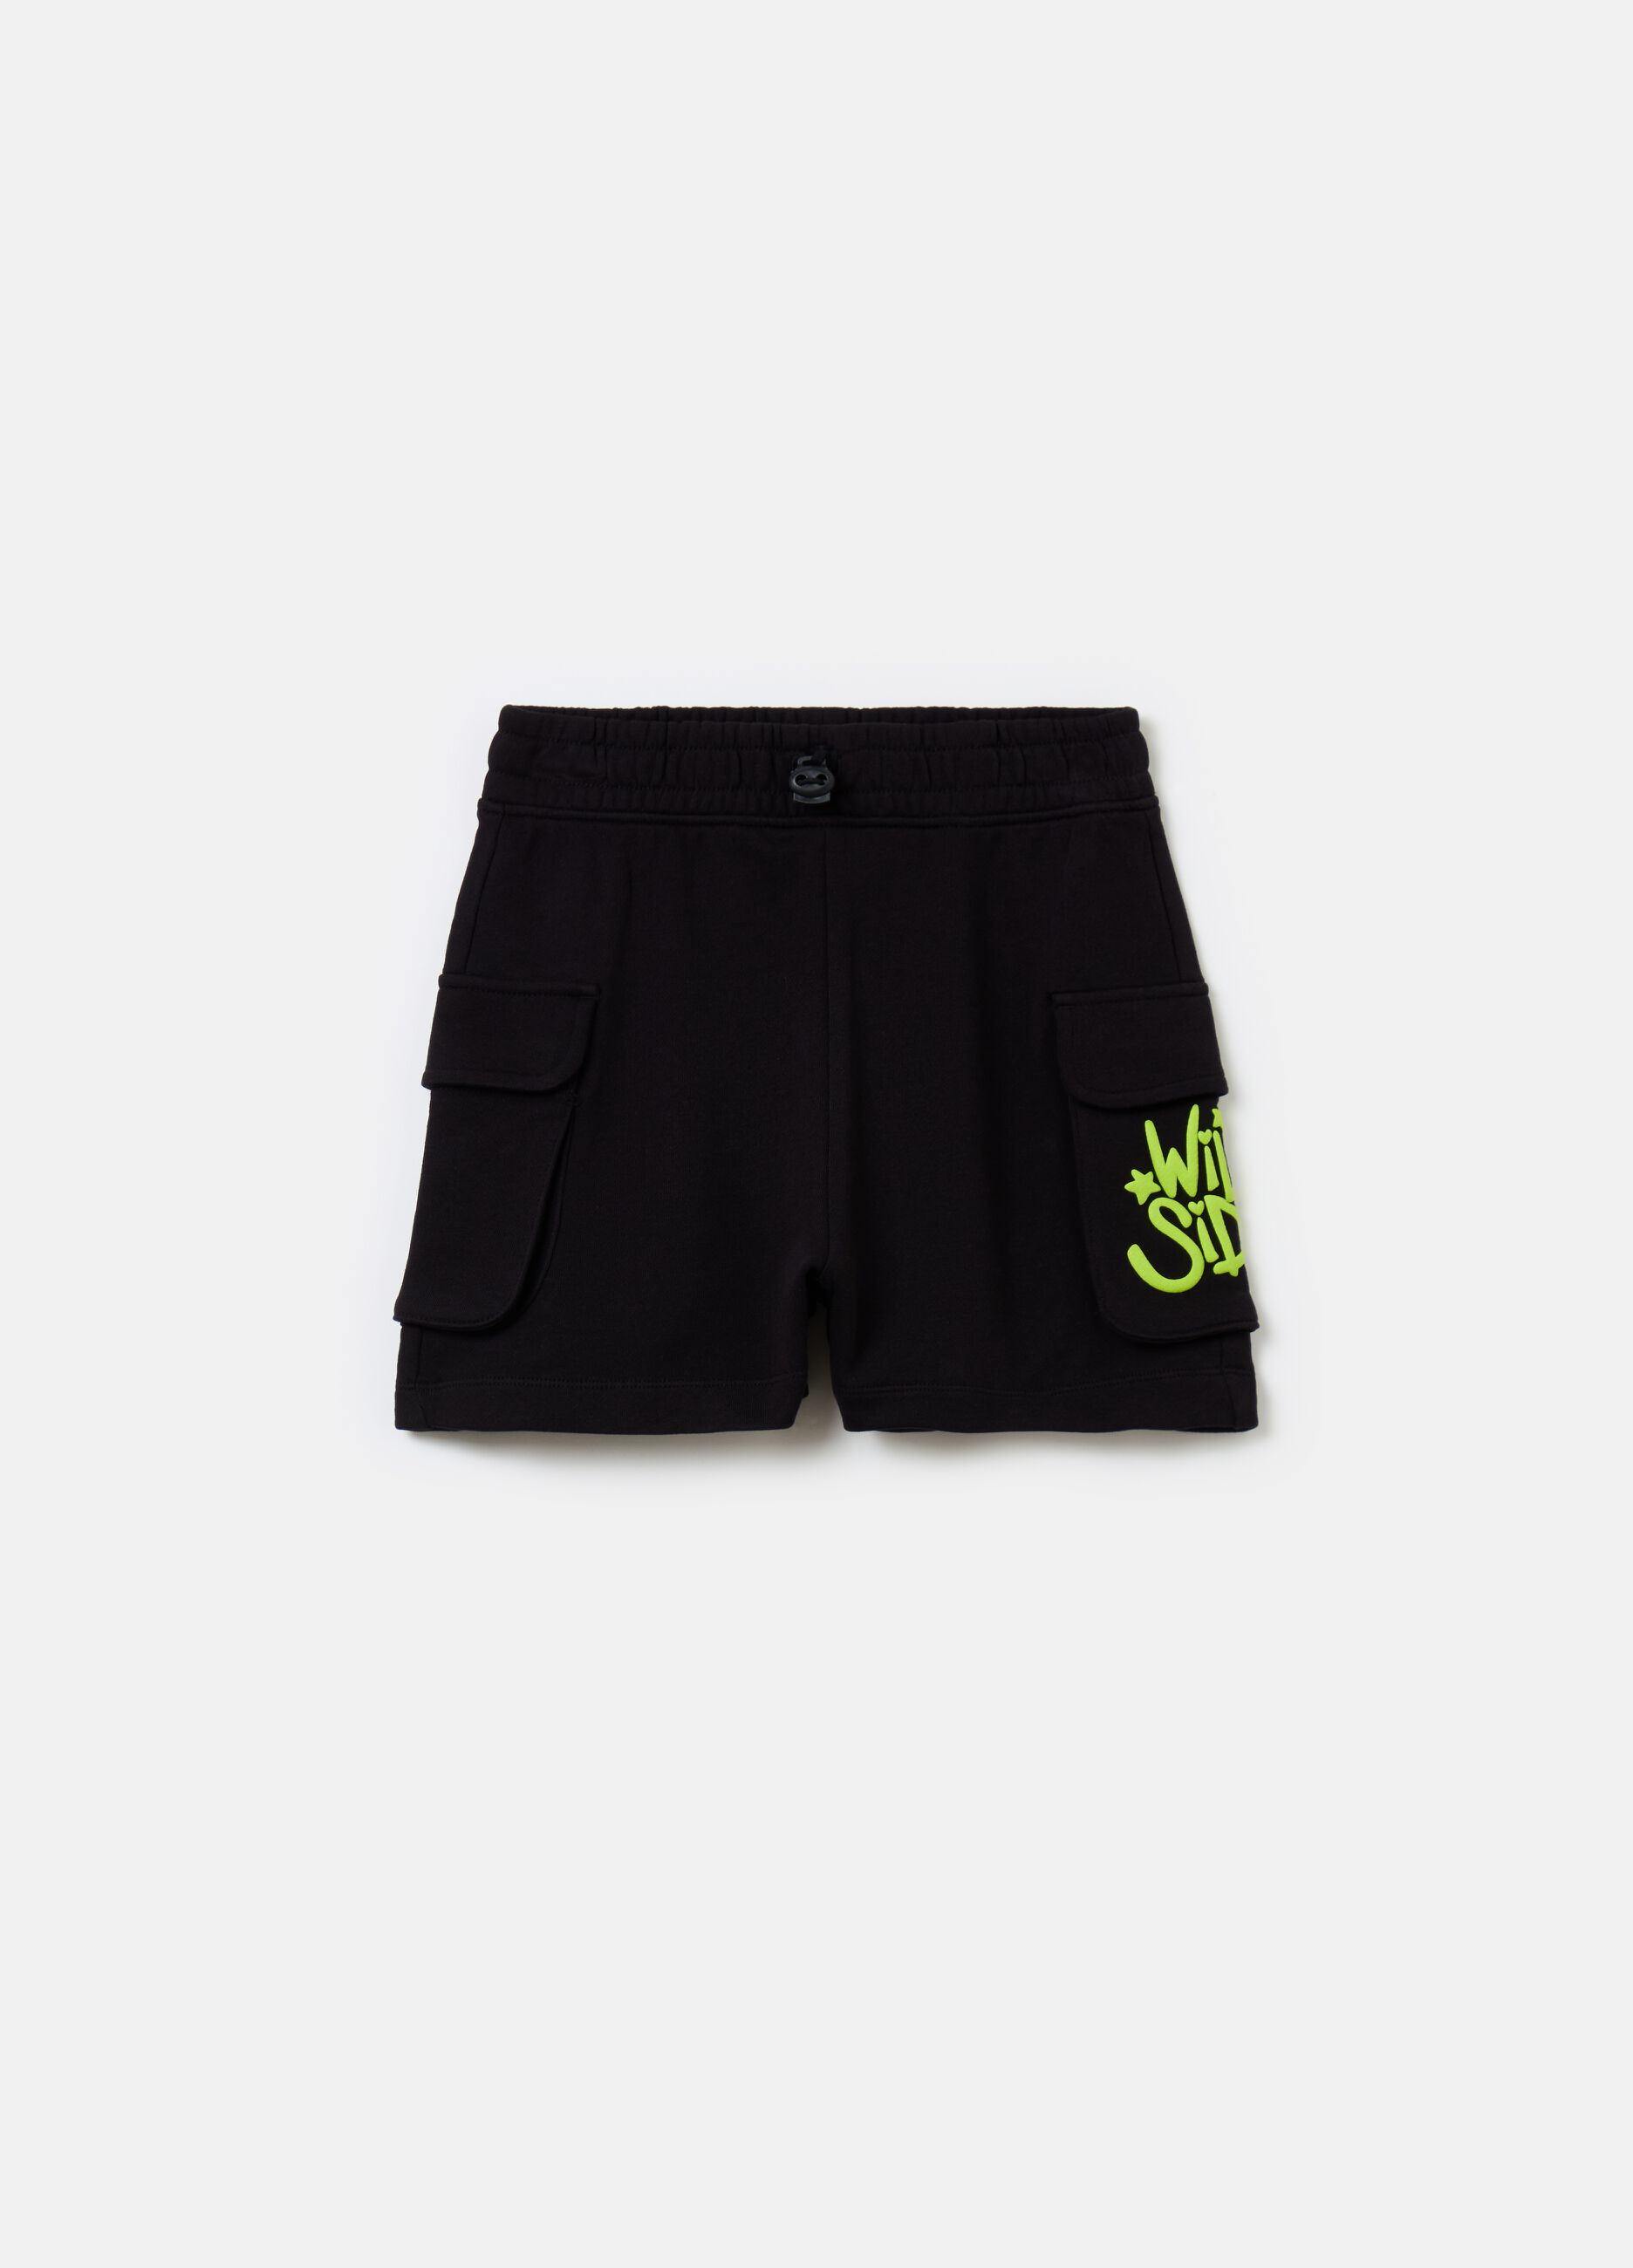 Shorts with drawstring and pockets